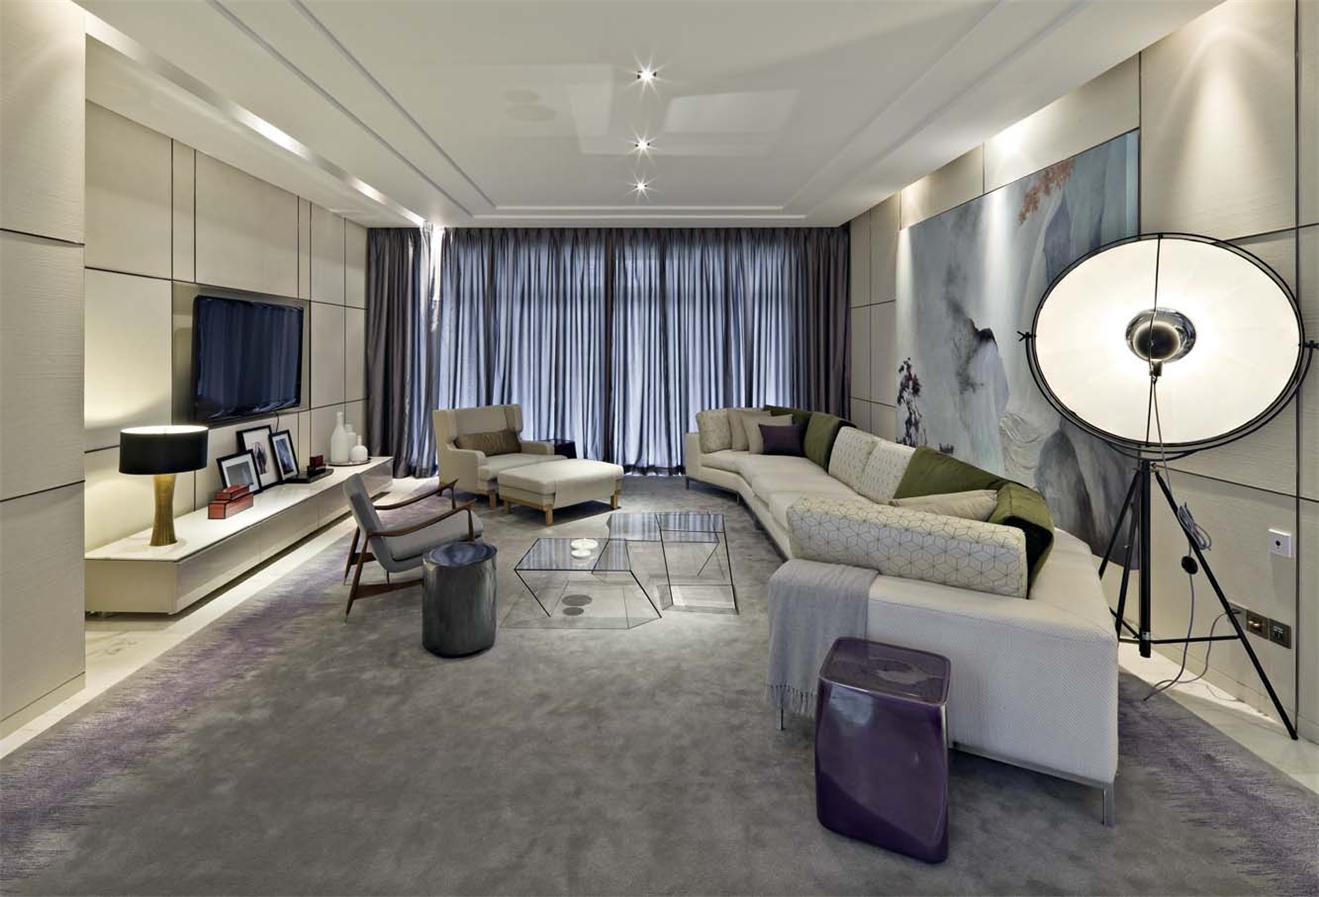 燕都紫庭三室两厅现代风格设计